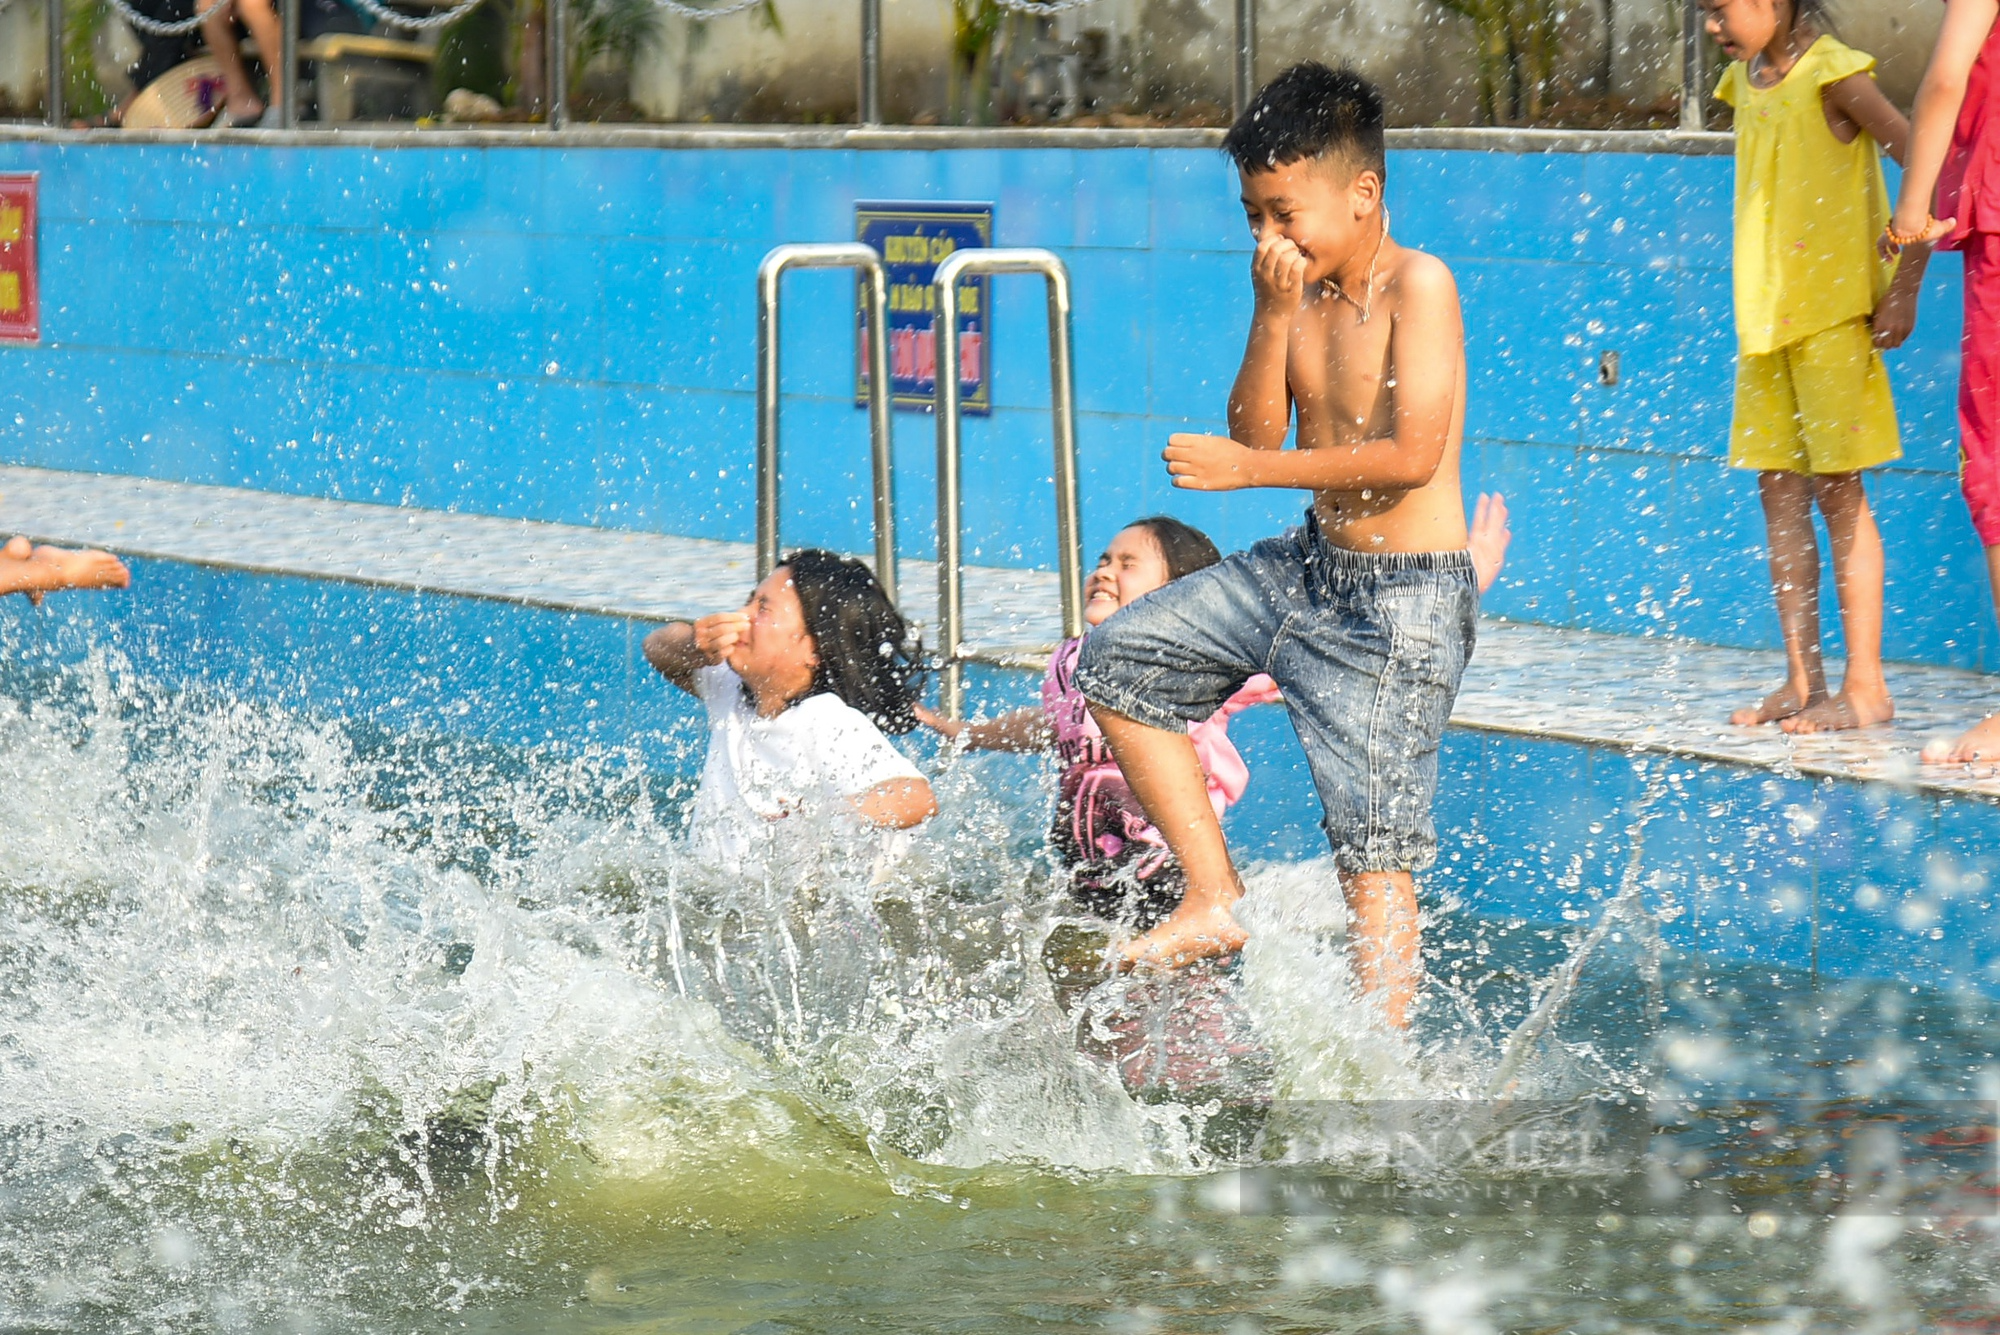 Biến ao làng thành bể bơi miễn phí, trẻ em thích thú tắm giải nhiệt ngày nắng nóng - Ảnh 8.